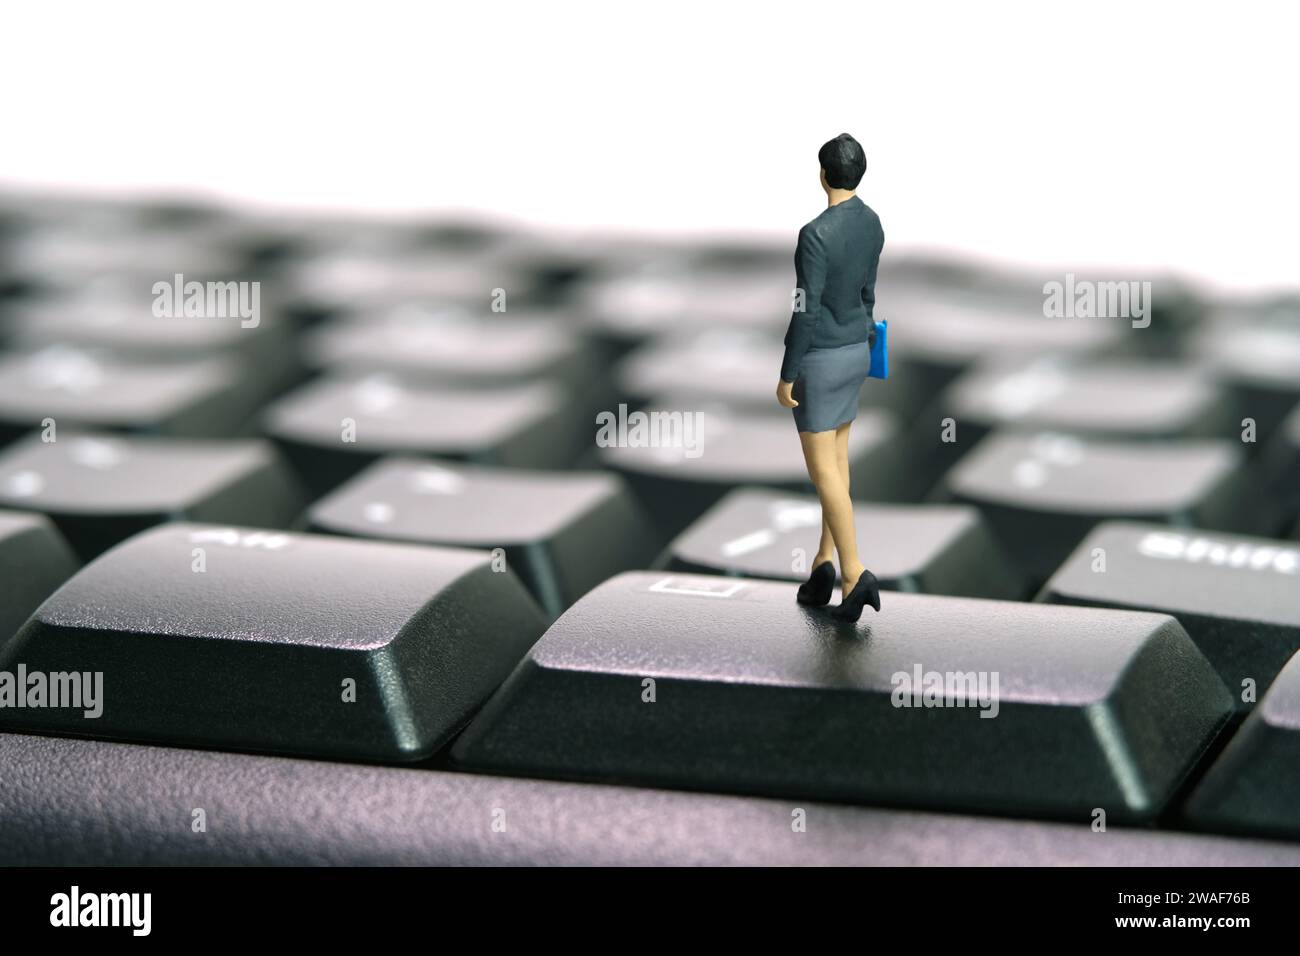 Miniatur Menschen Spielzeug Figur Fotografie. Jobkonzept eingeben. Eine Geschäftsfrau, die über der schwarzen Tastatur steht. Isoliert auf weißem Hintergrund. Bildfoto Stockfoto